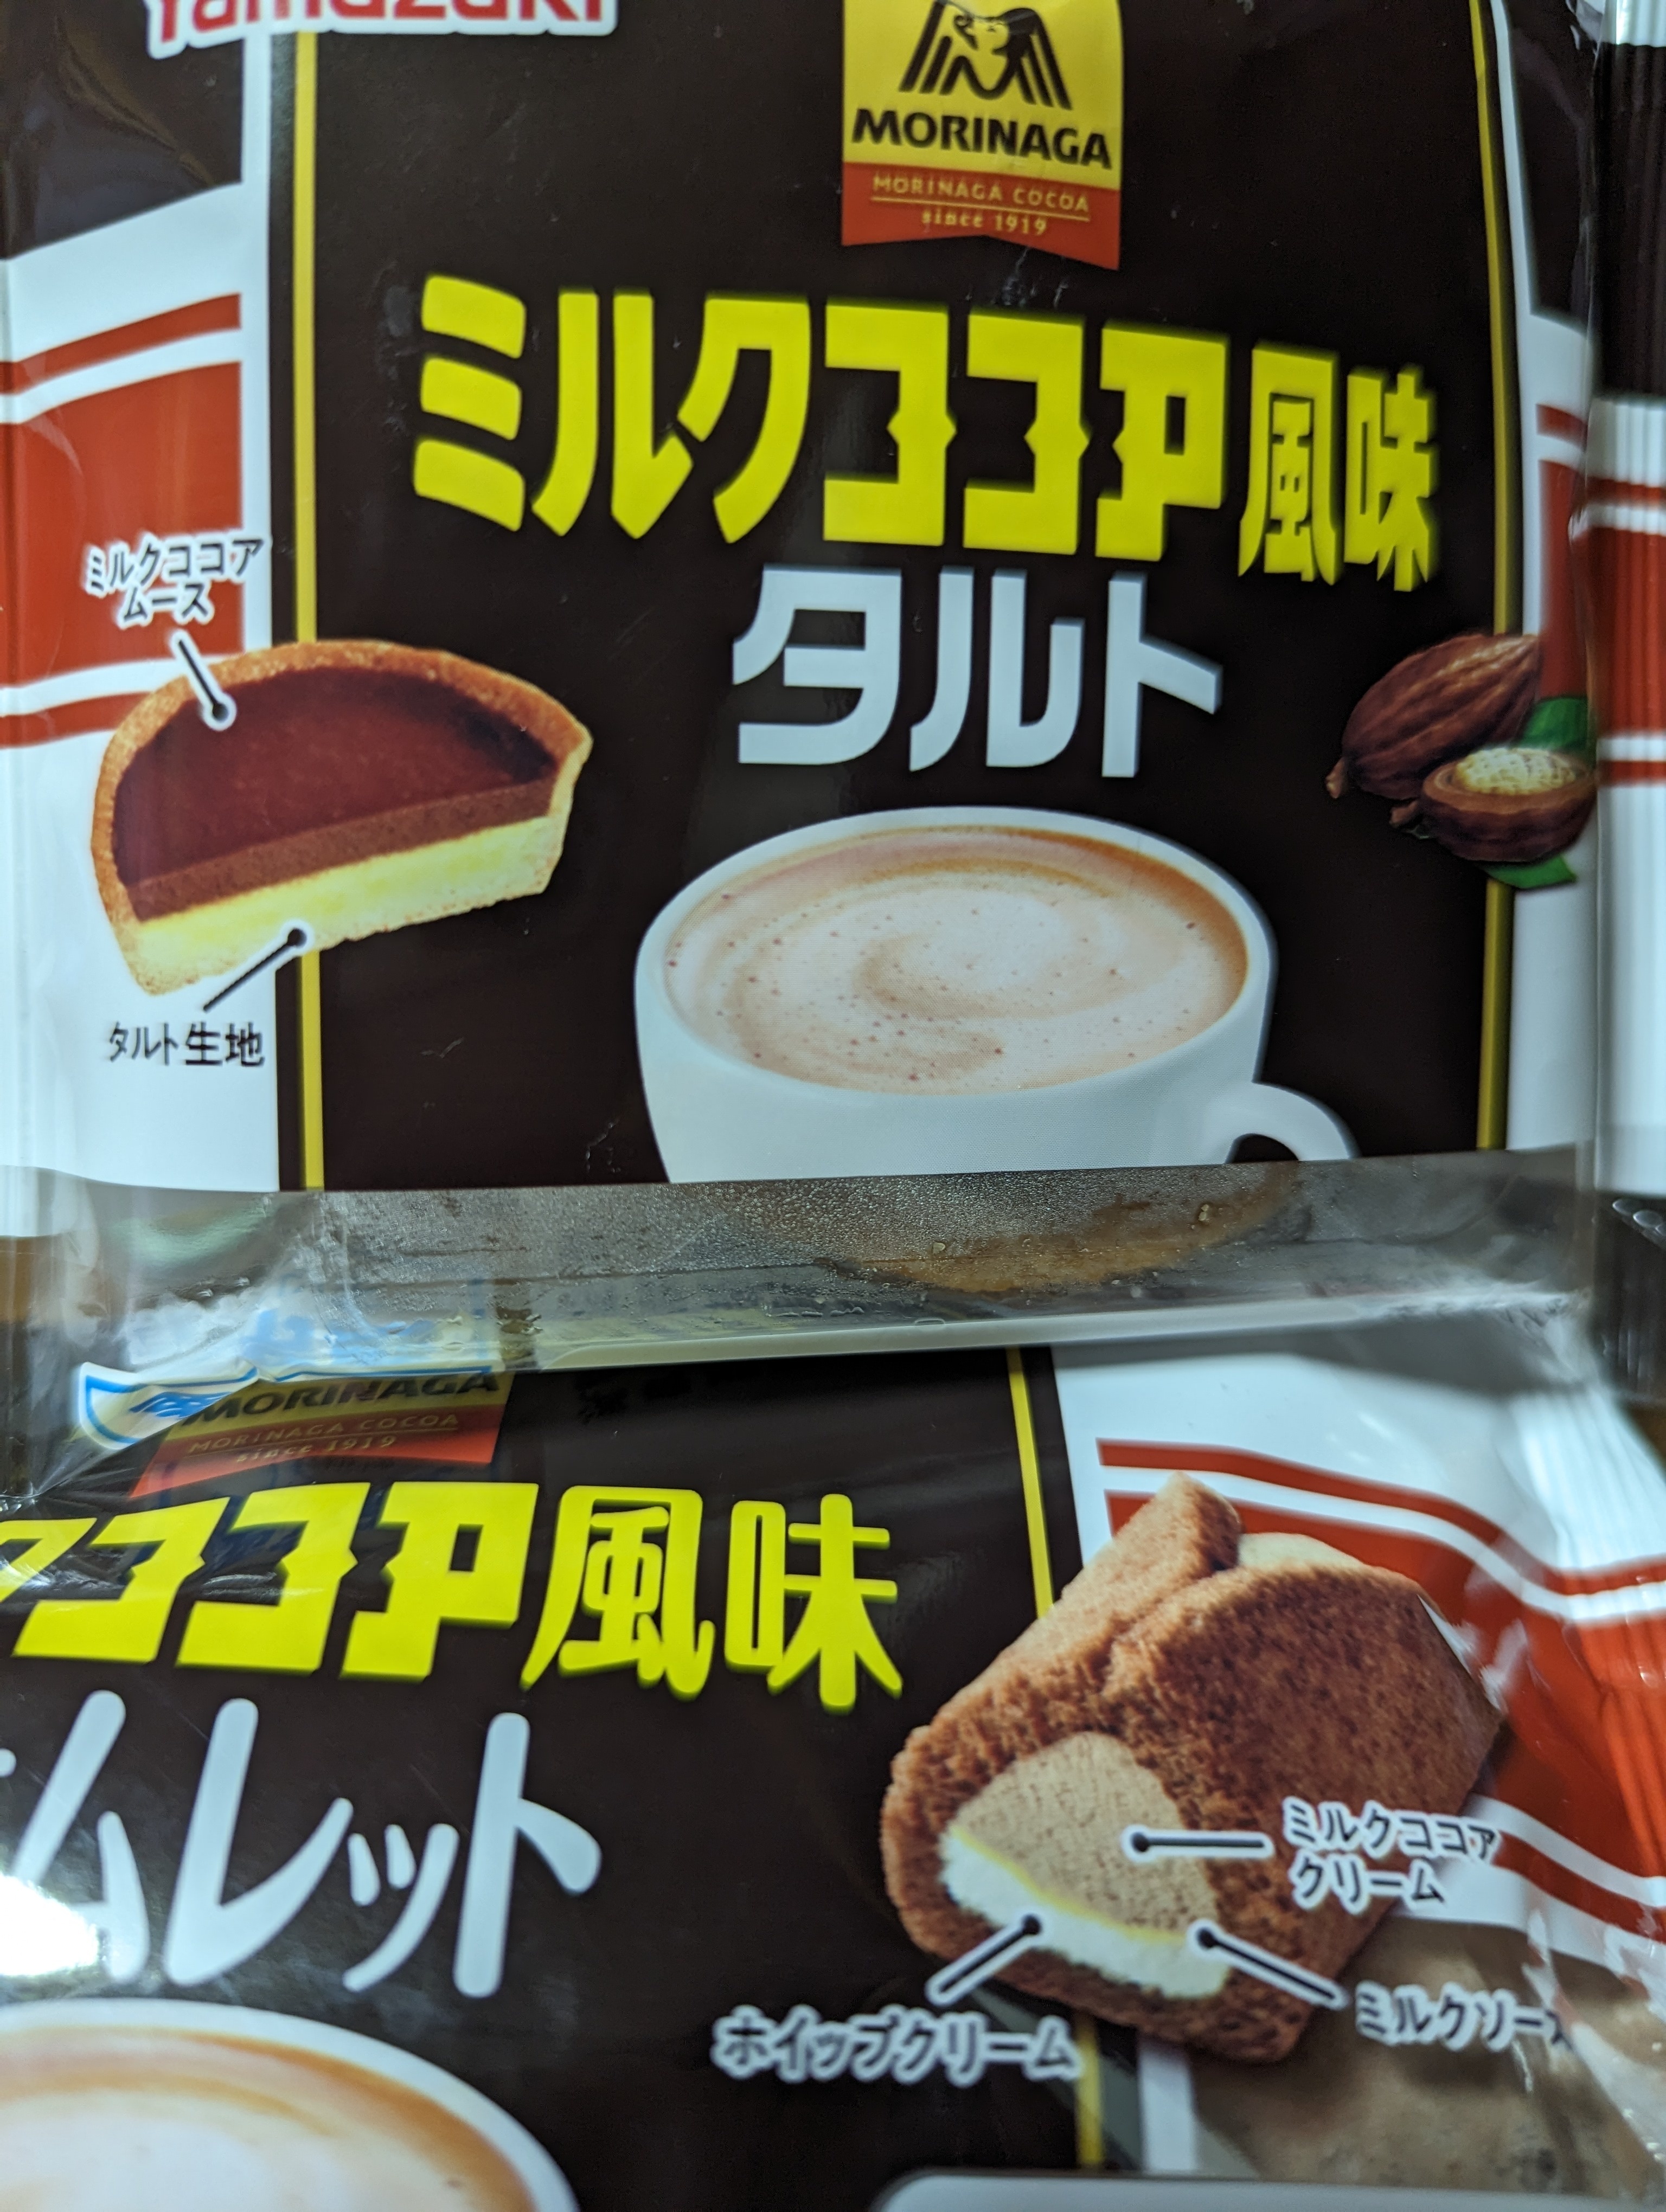 Yamazakiさんとコラボのミルクココア風味ケーキ、ミルクココア風味 